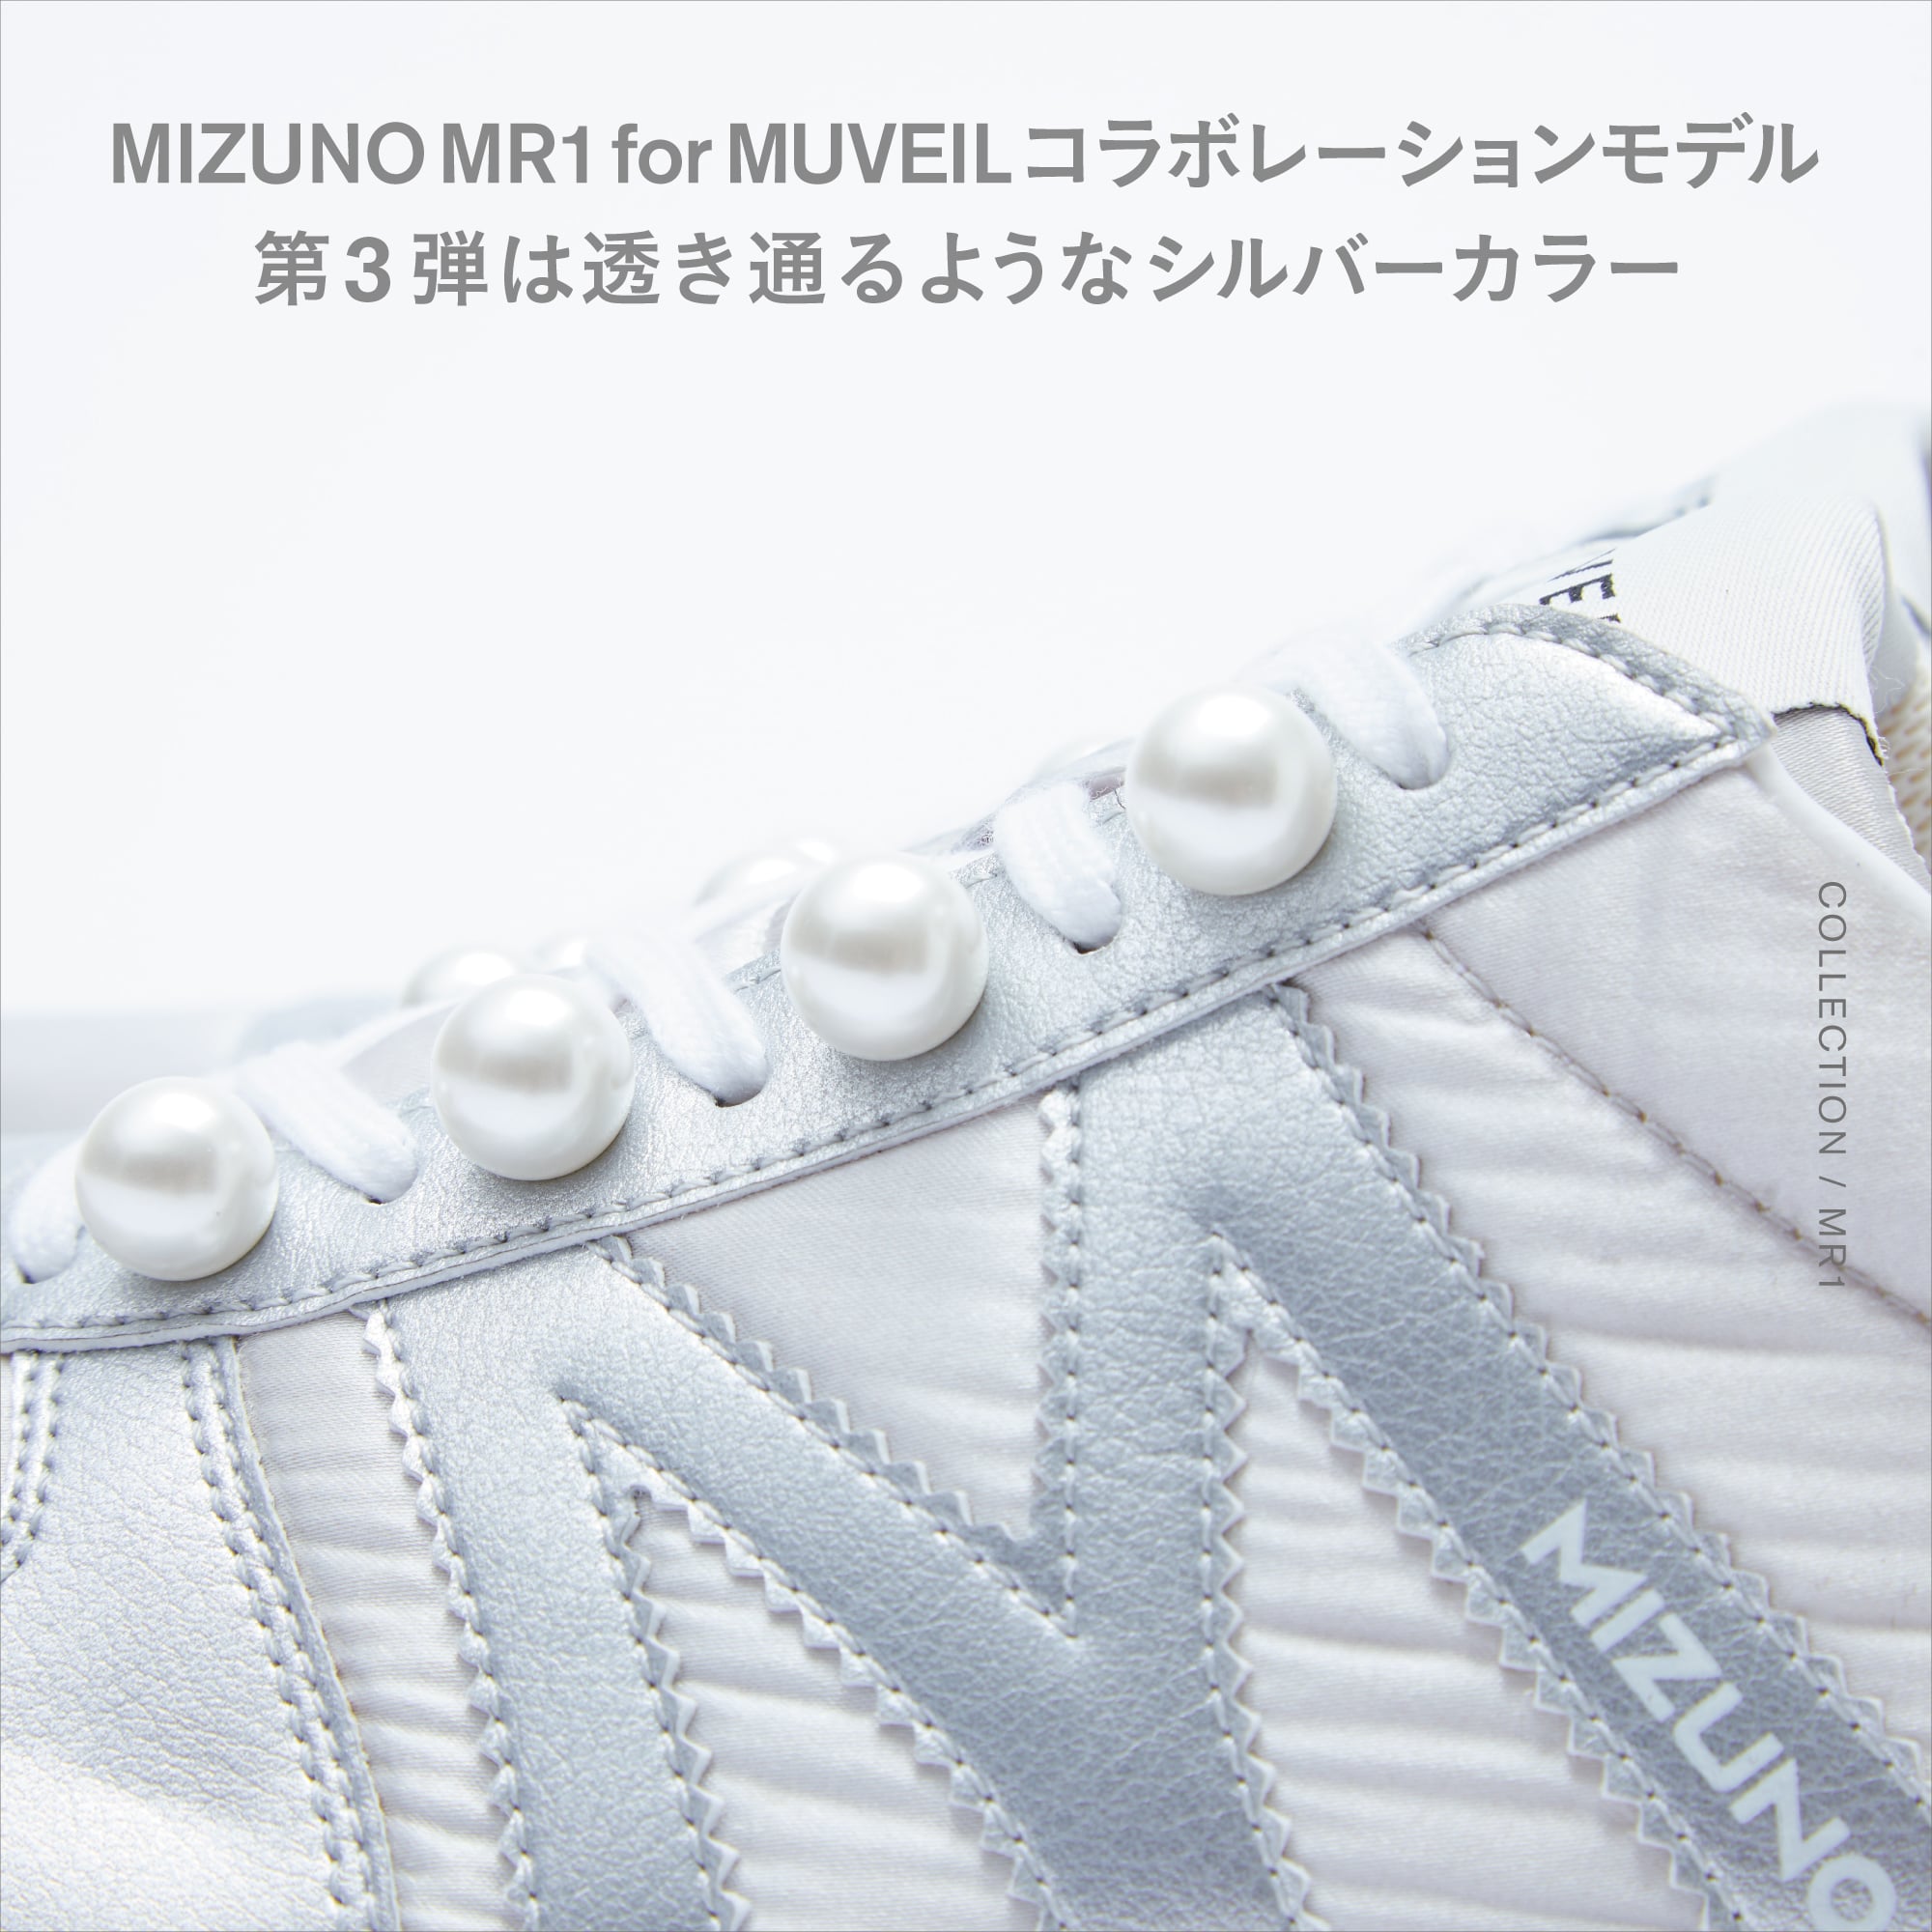 MIZUNO MR1 for MUVEIL コラボレーションモデル第3弾は透き通るようなシルバーカラー